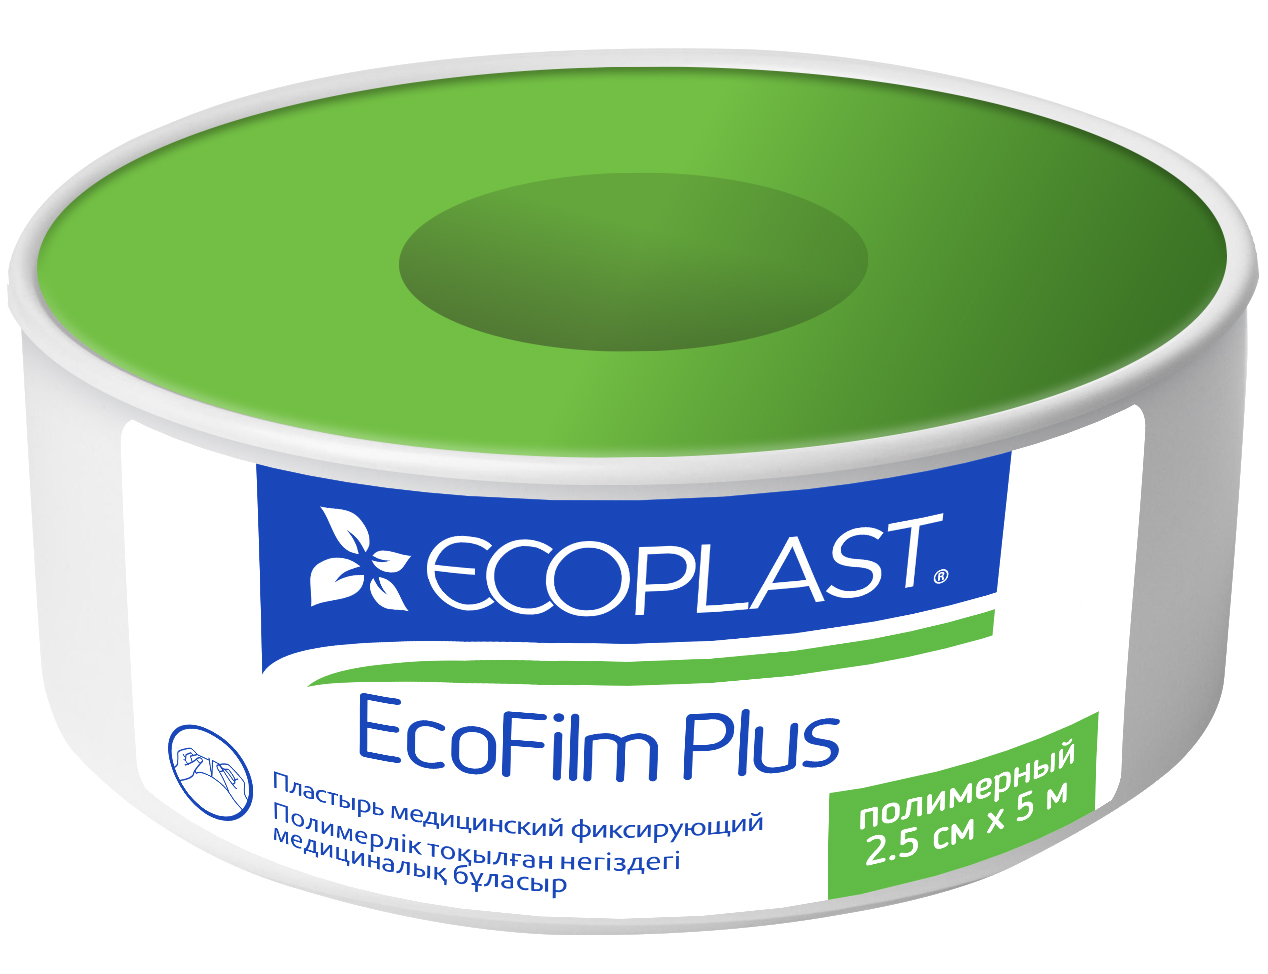 EP Пластырь мед фикс полимер EcoFilm plus 2,5см х 5м